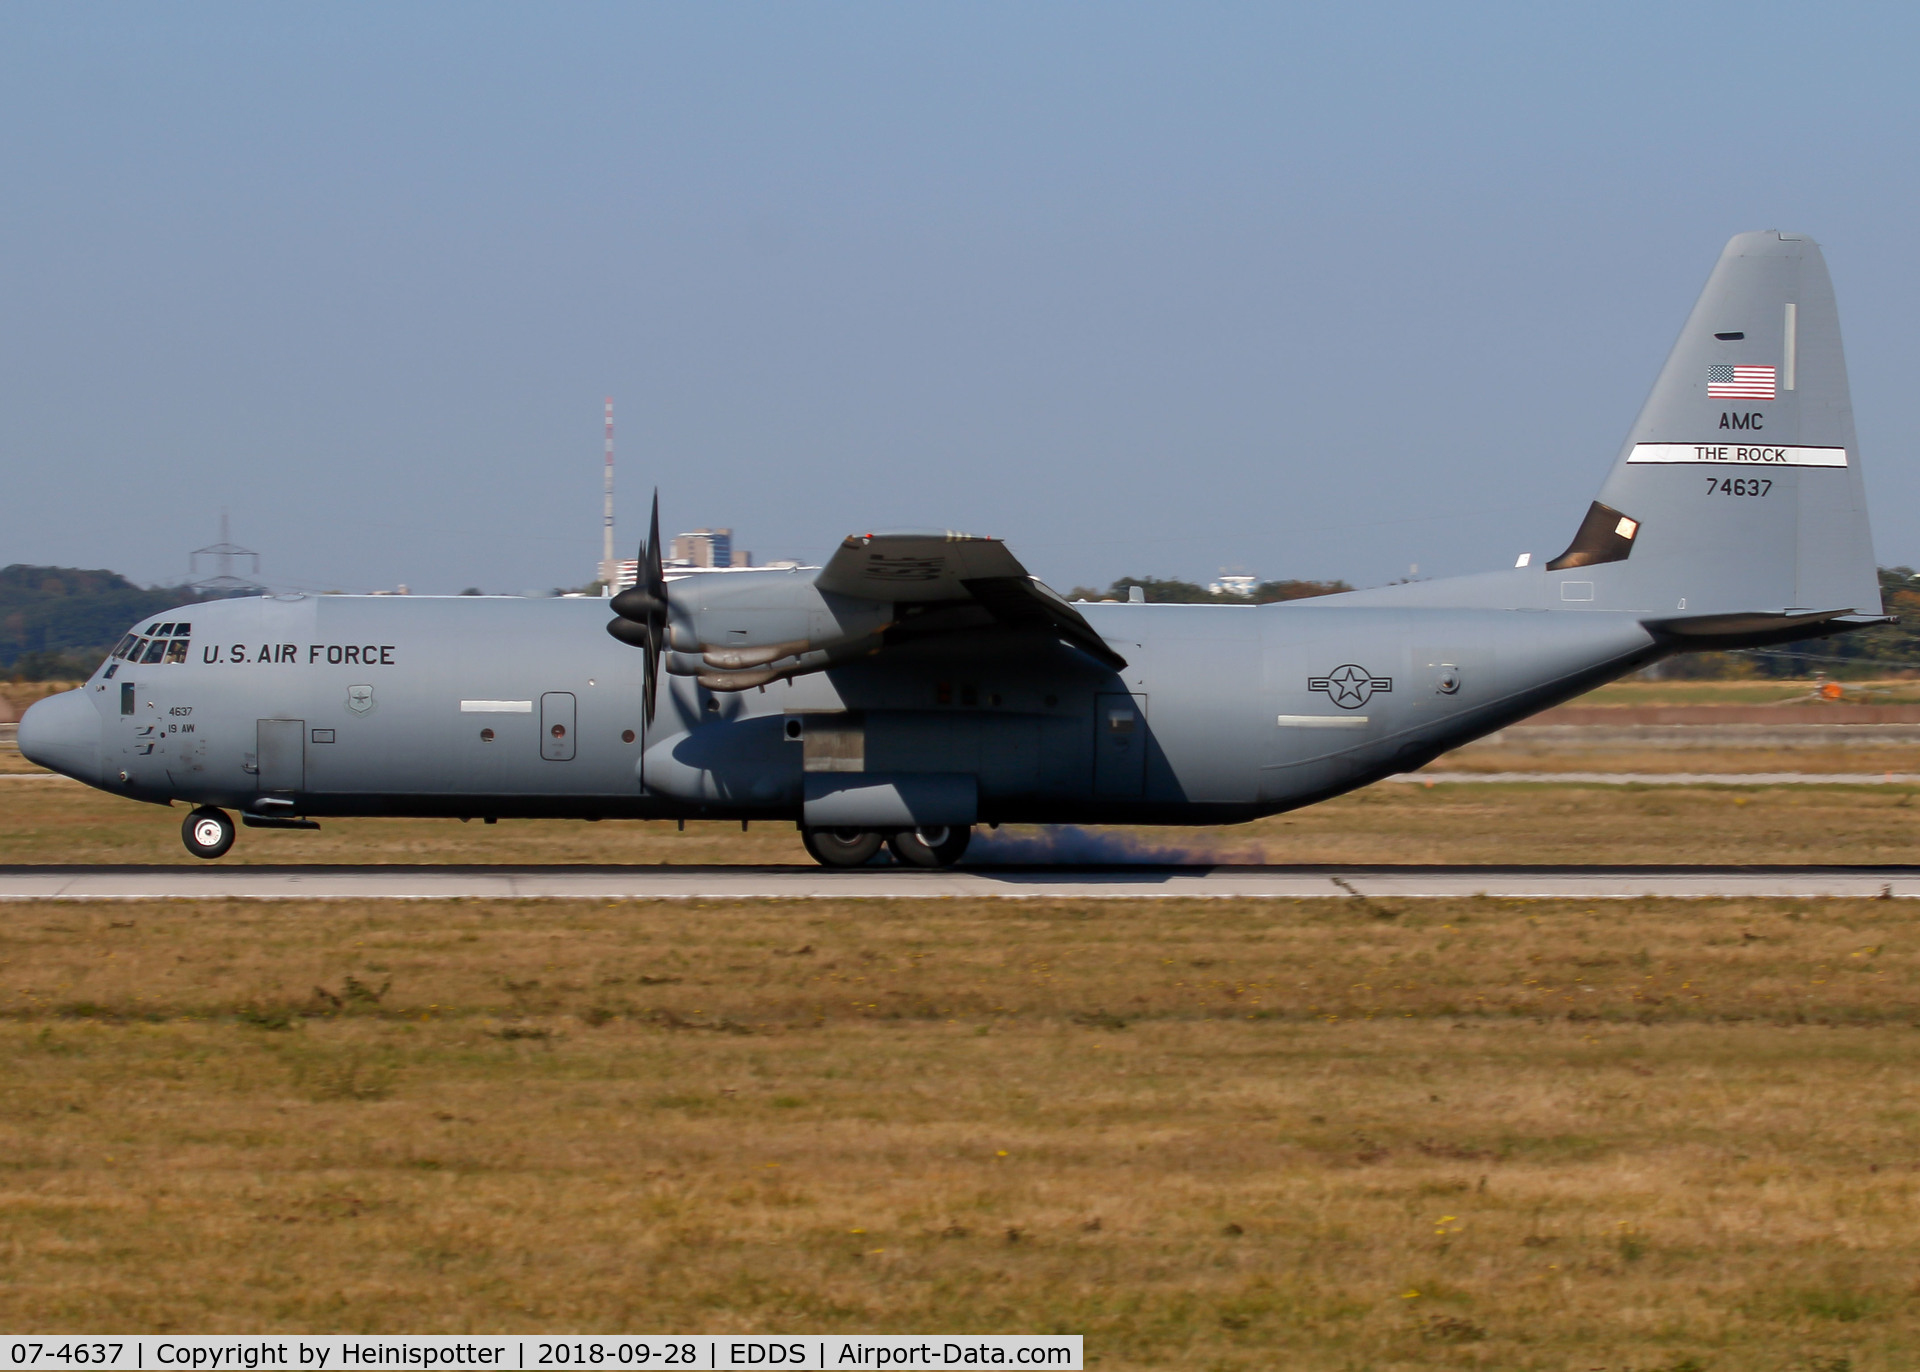 07-4637, 2007 Lockheed C-130J-30 Super Hercules C/N 382-5597, 07-4637 at Stuttgart Airport.